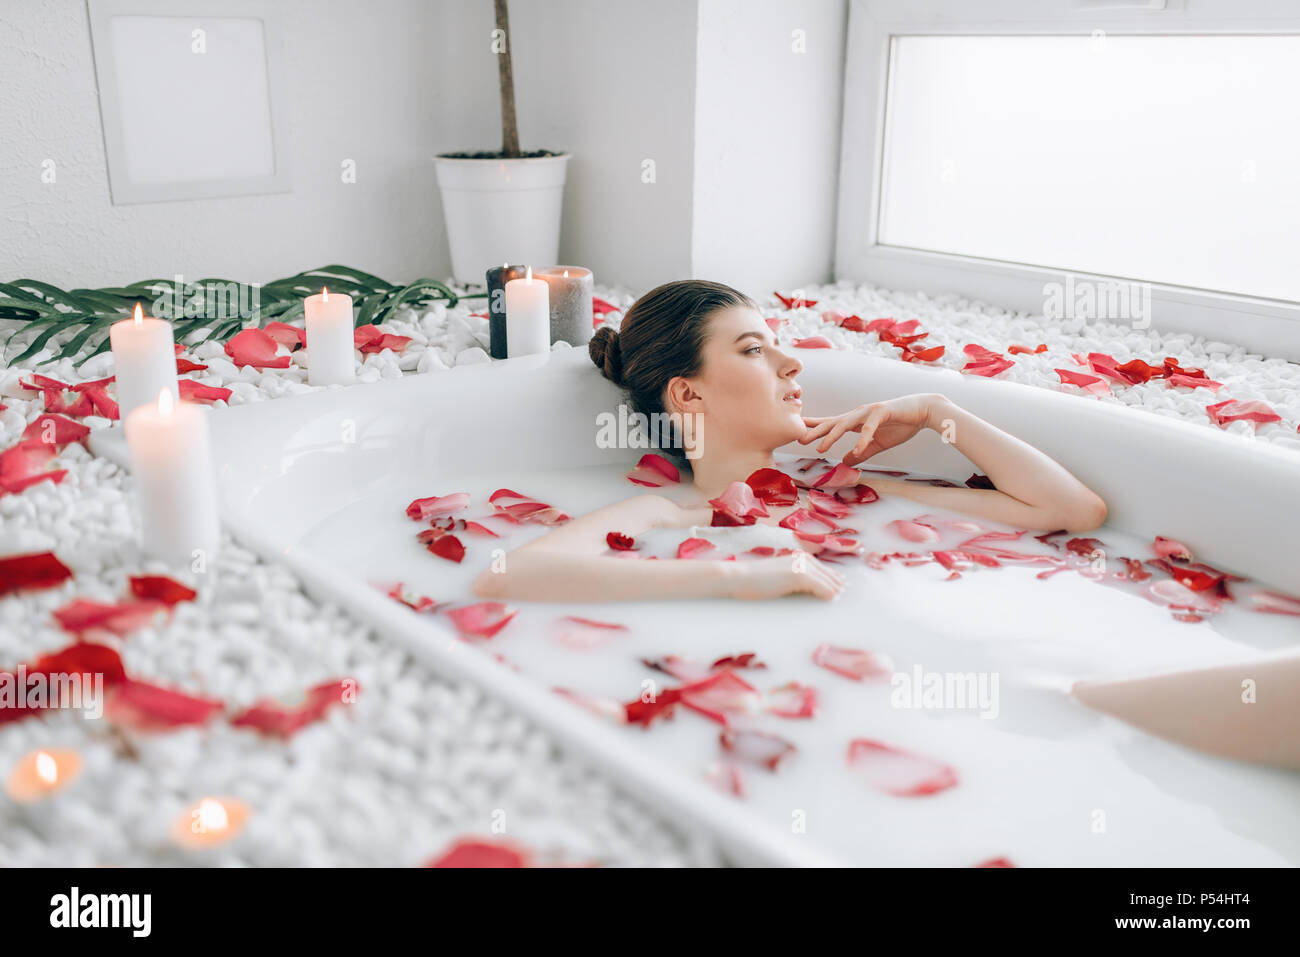 Belle Dame couché dans la baignoire avec de la mousse et décoré avec des  pétales de rose. D'une détente complète dans la salle de bains Photo Stock  - Alamy